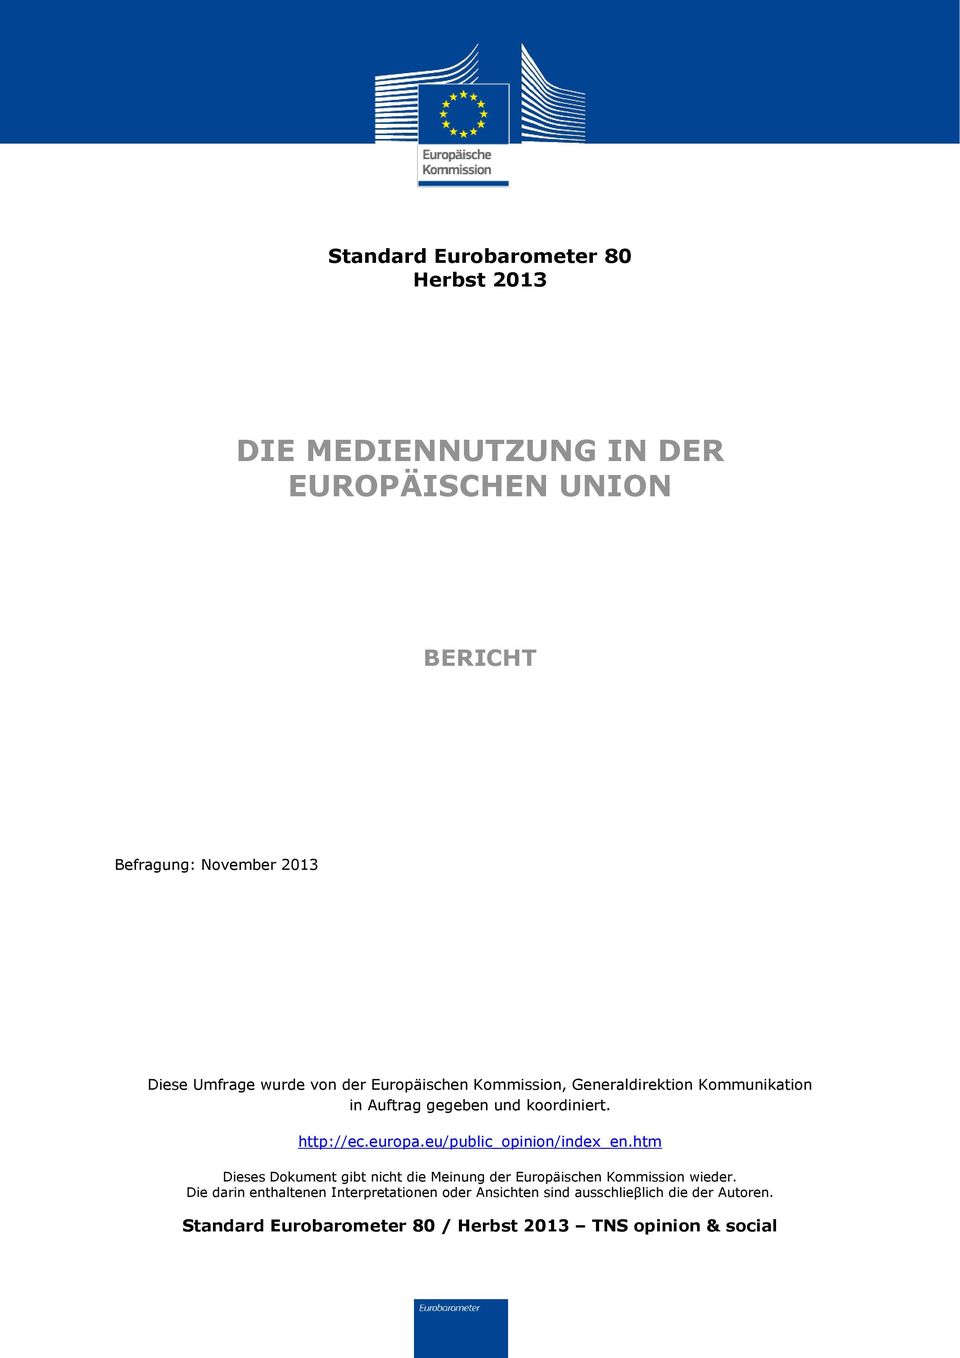 europa.eu/public_opinion/index_en.htm Dieses Dokument gibt nicht die Meinung der Europäischen Kommission wieder.